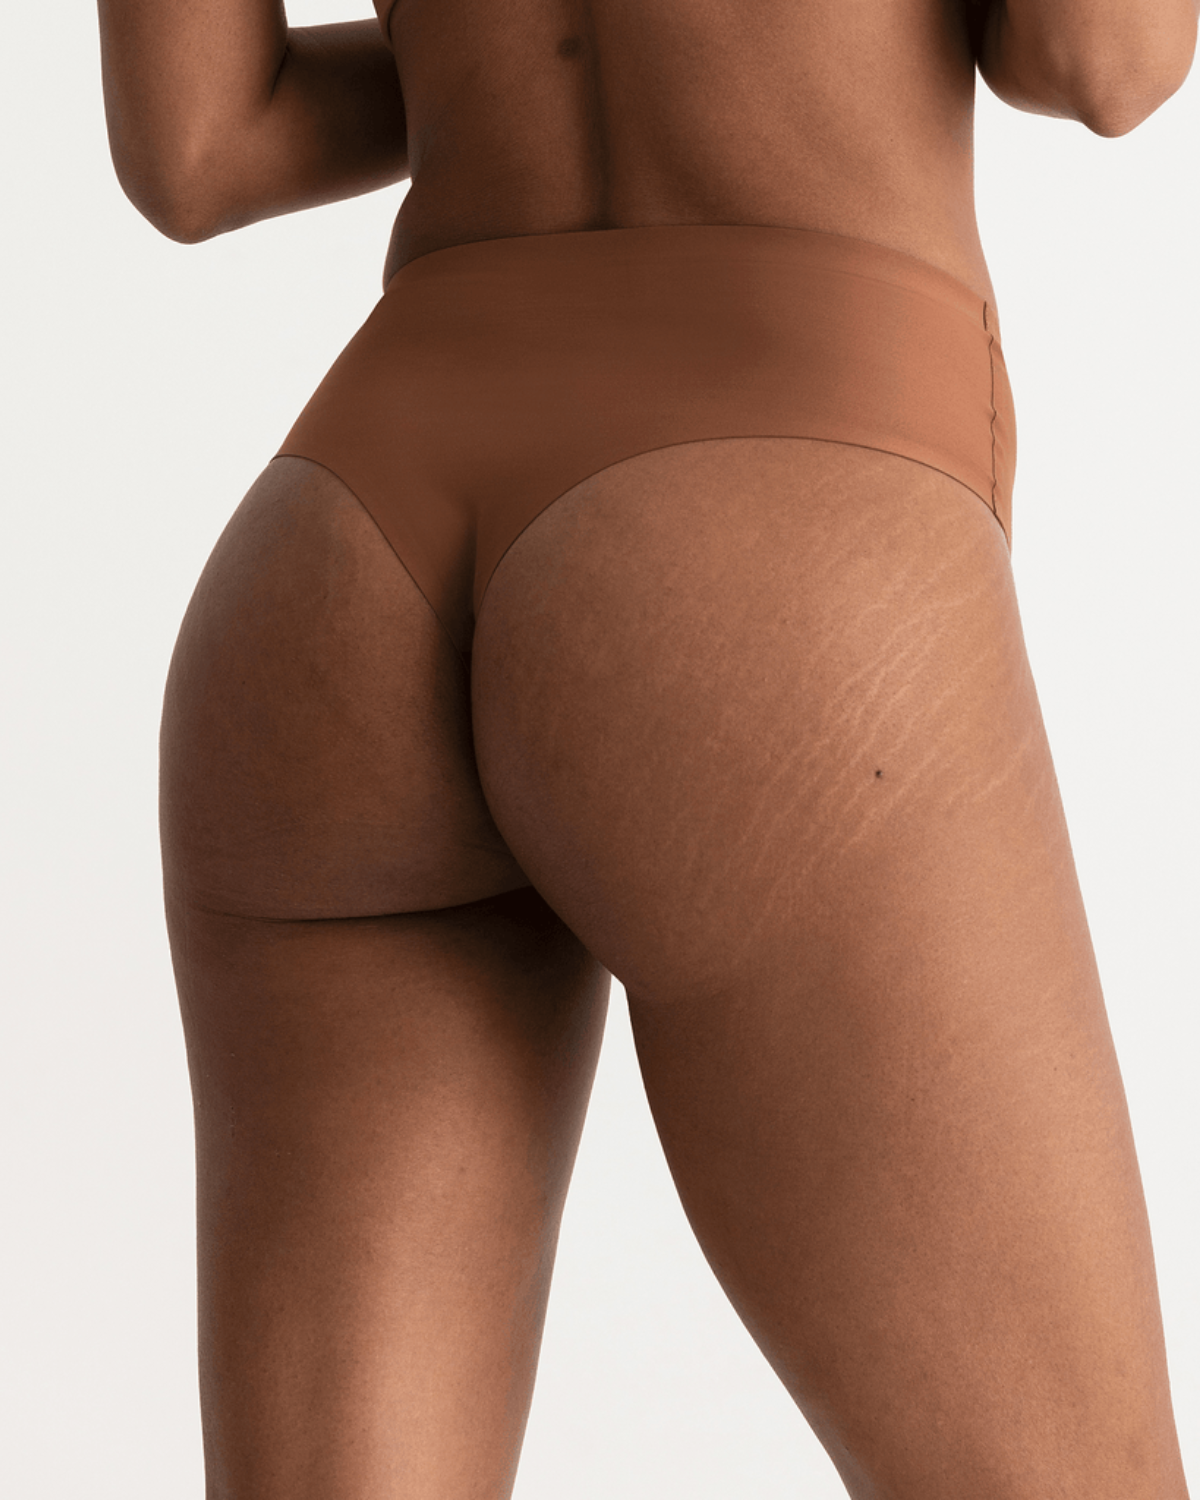 Model wearing a dark nude high waist seamless thong